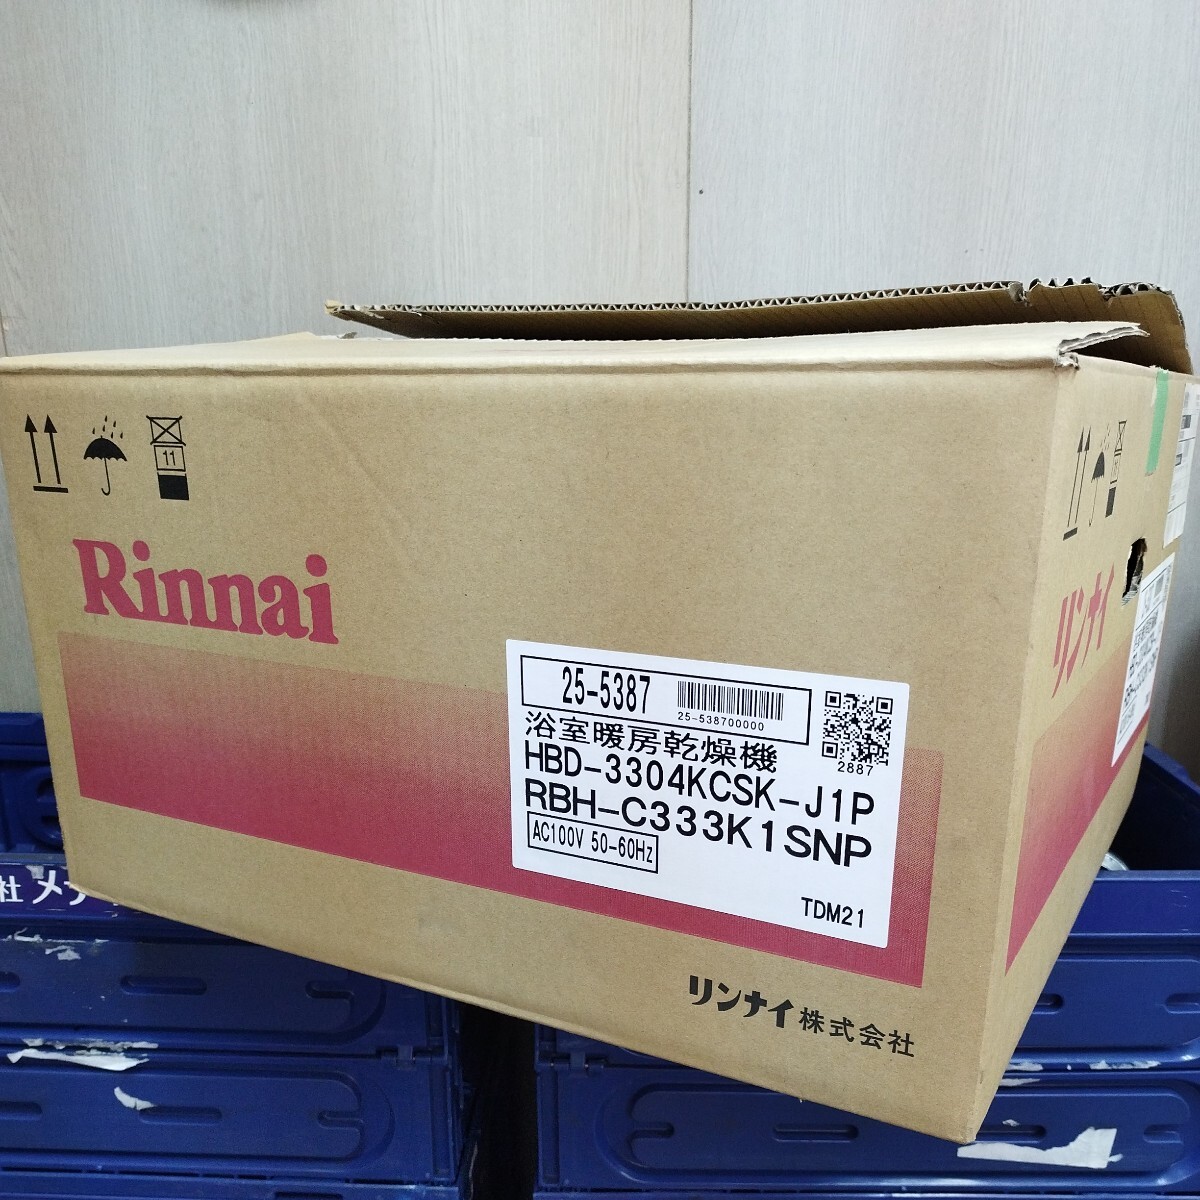 Rinnai 浴室暖房乾燥機 HDB-330 4KCSK-J1P RBH-C333K1 SNP リンナイ 未使用品の画像1